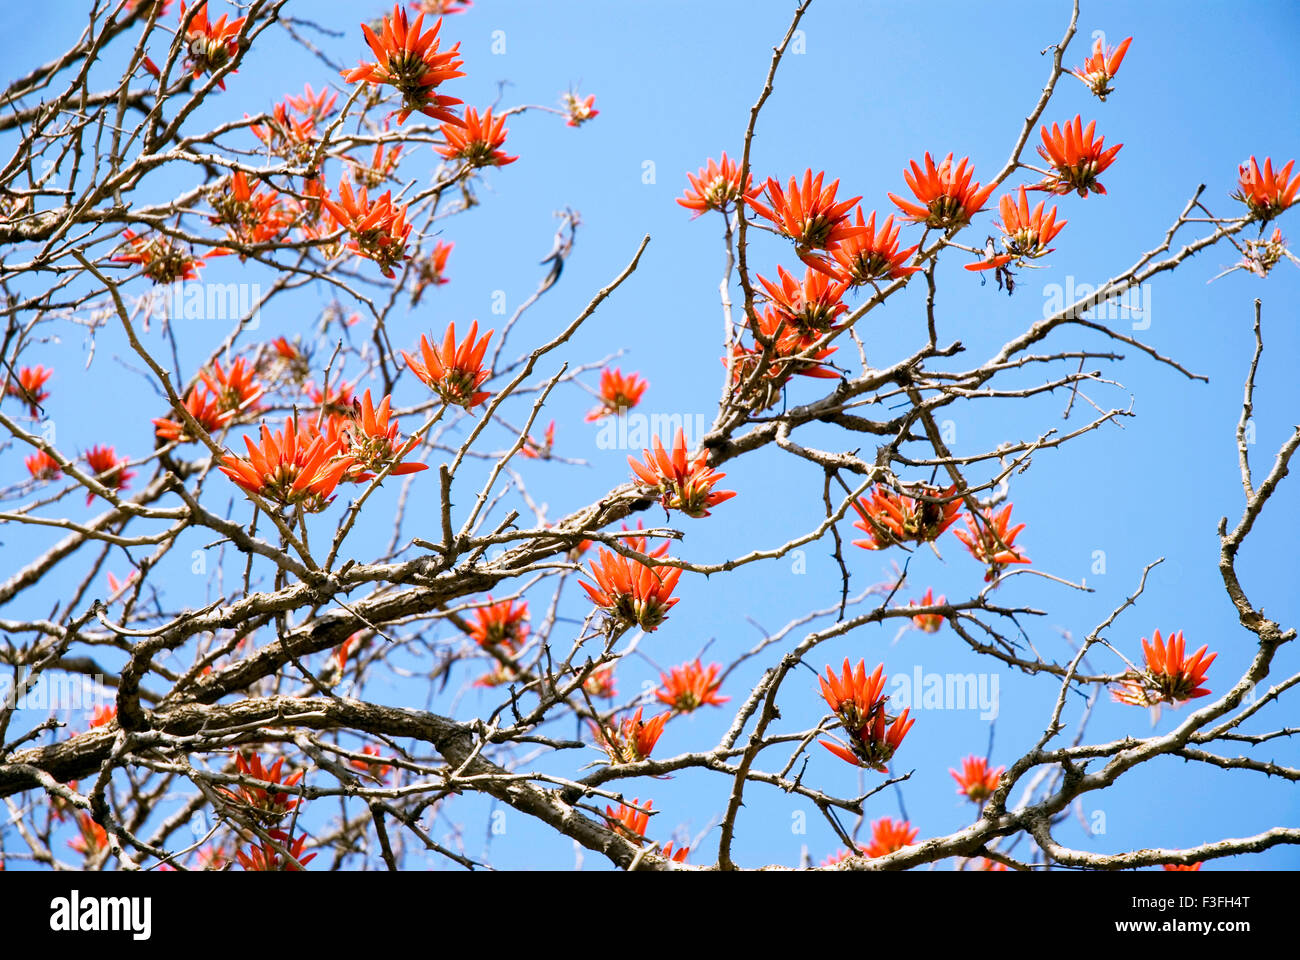 Indian coral tree pangara ; Latin name Erythrina indica Stock Photo